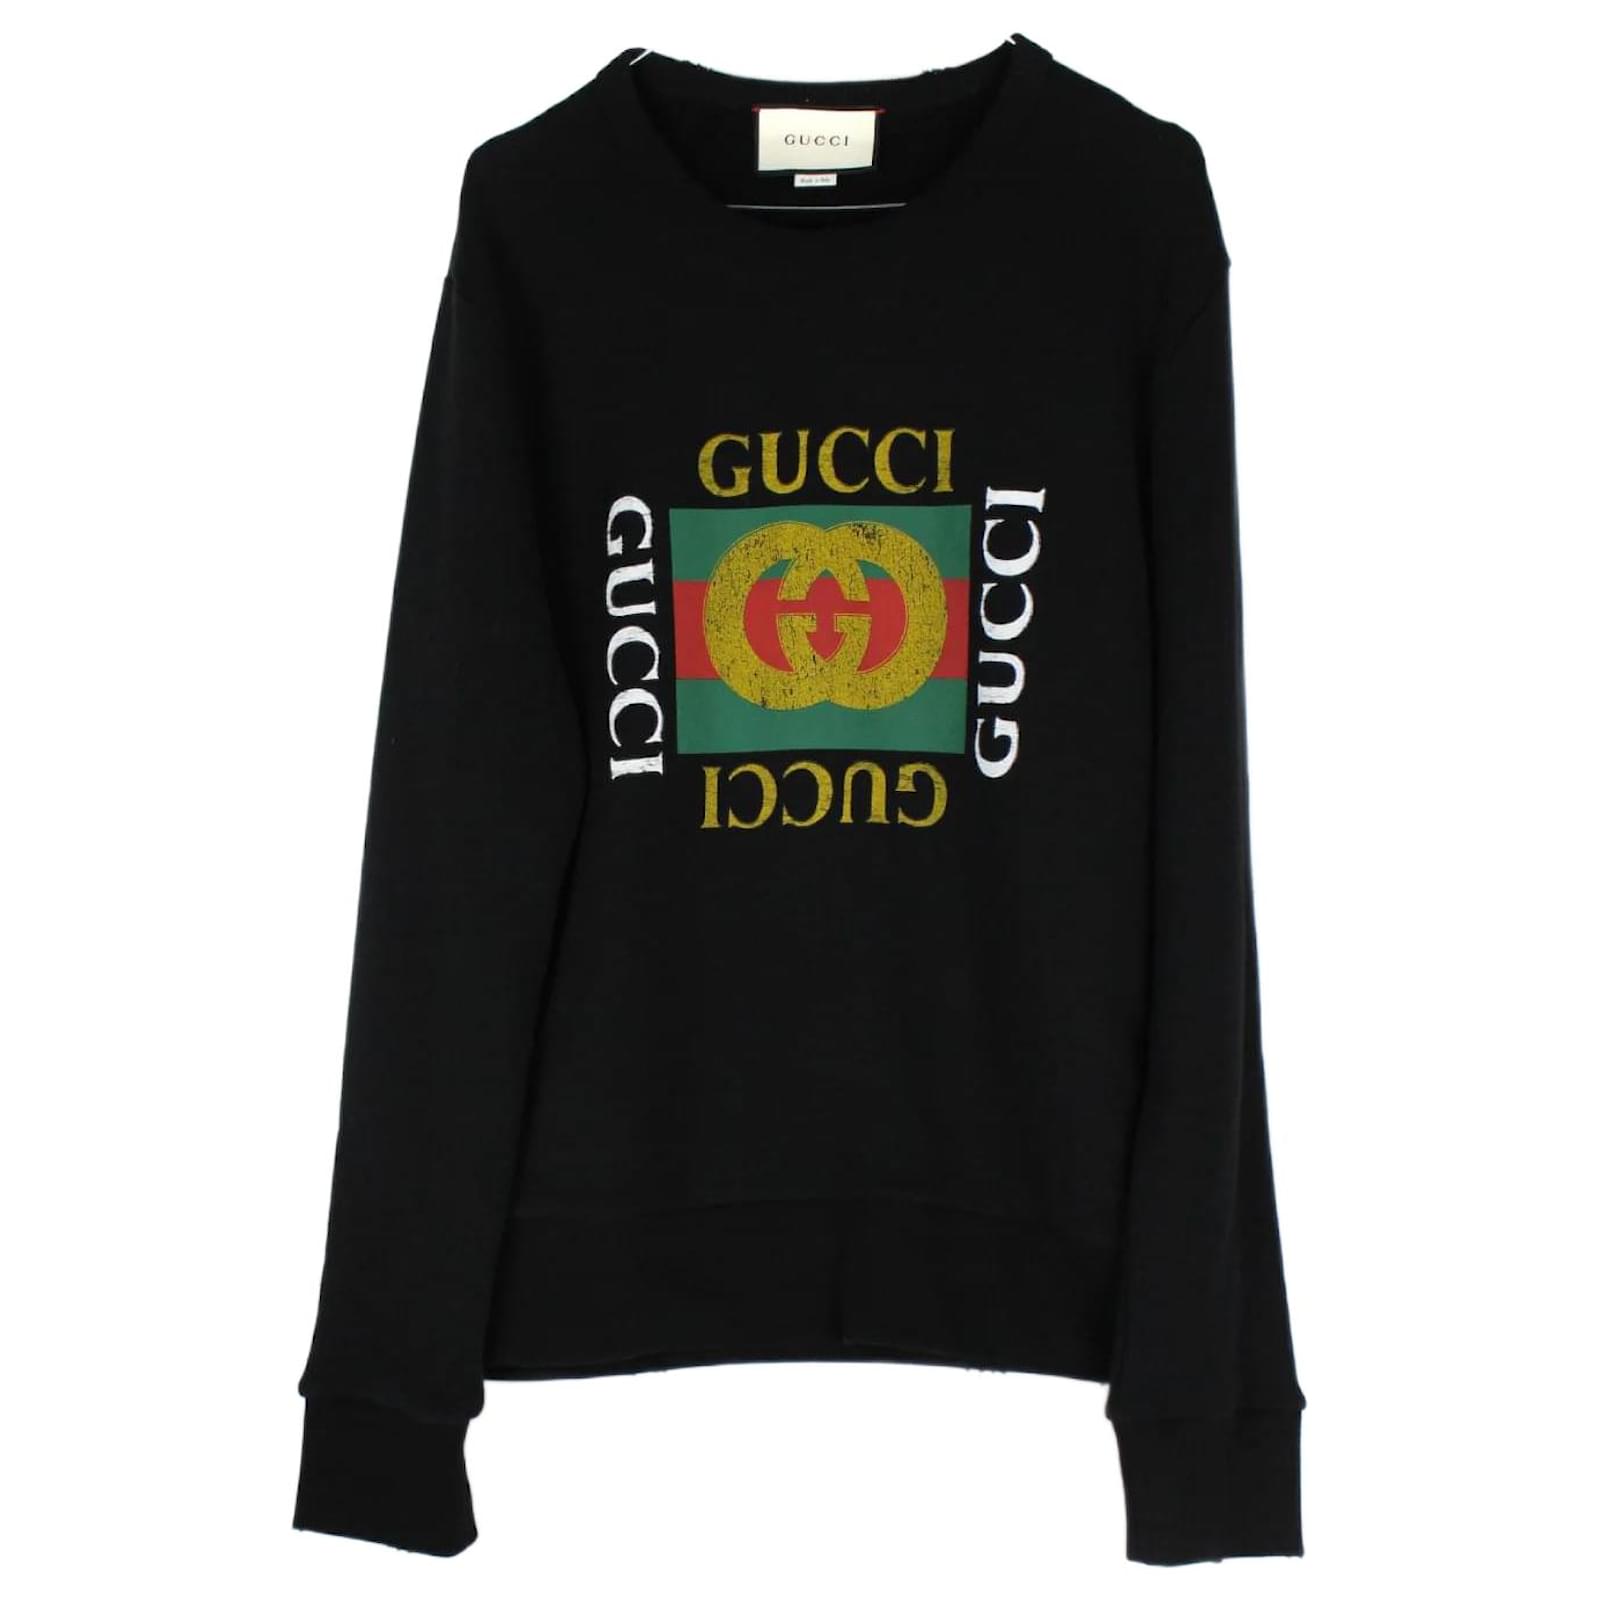 Camiseta Gucci Pato Donald!!!  Camiseta Masculina Gucci Nunca